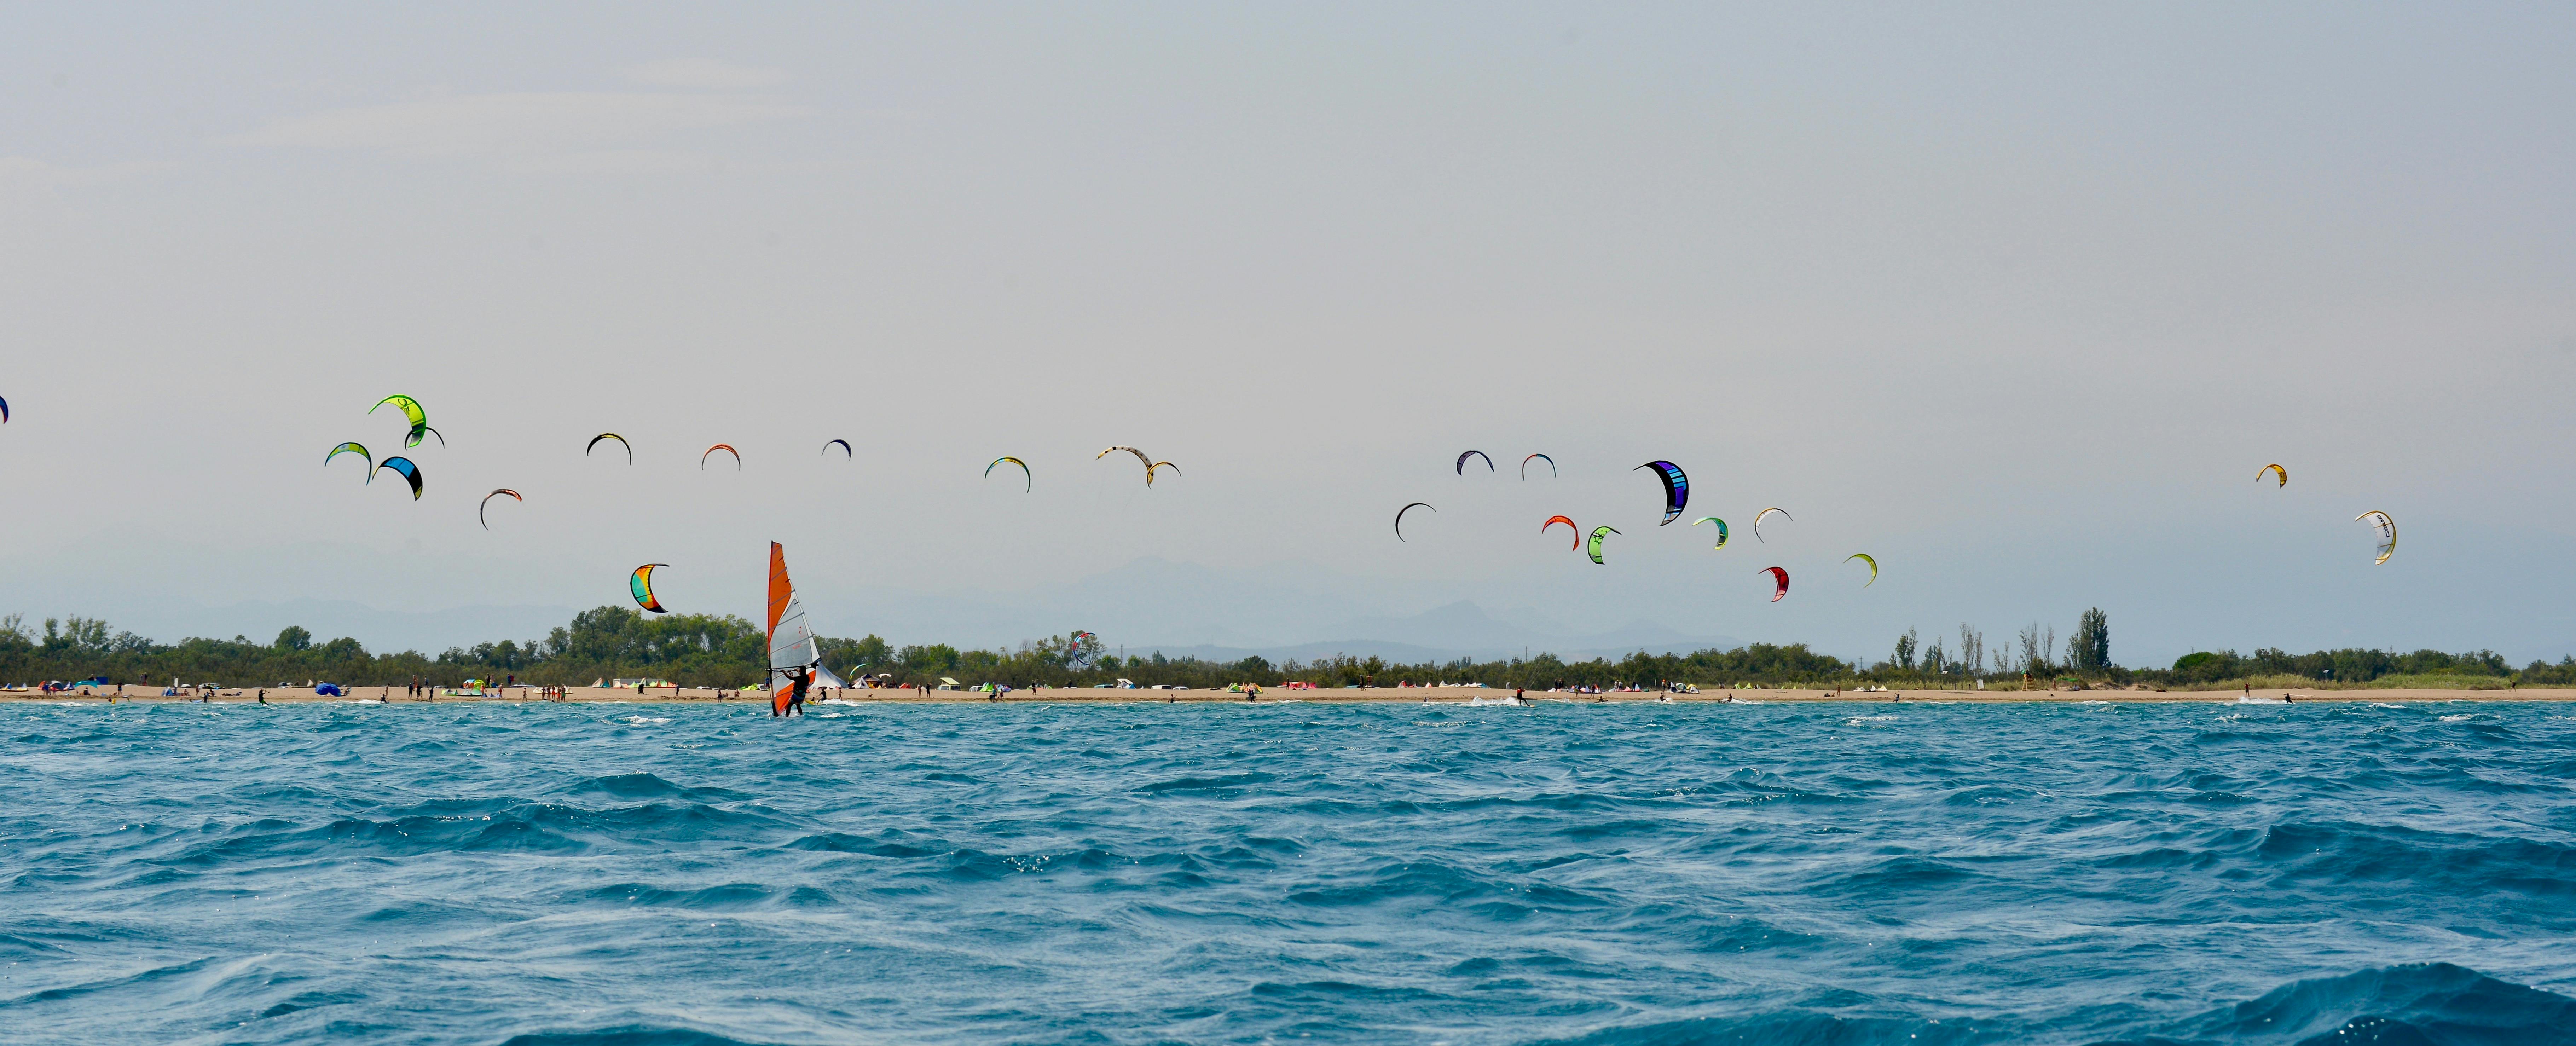 Free stock photo of kite surfing, kites